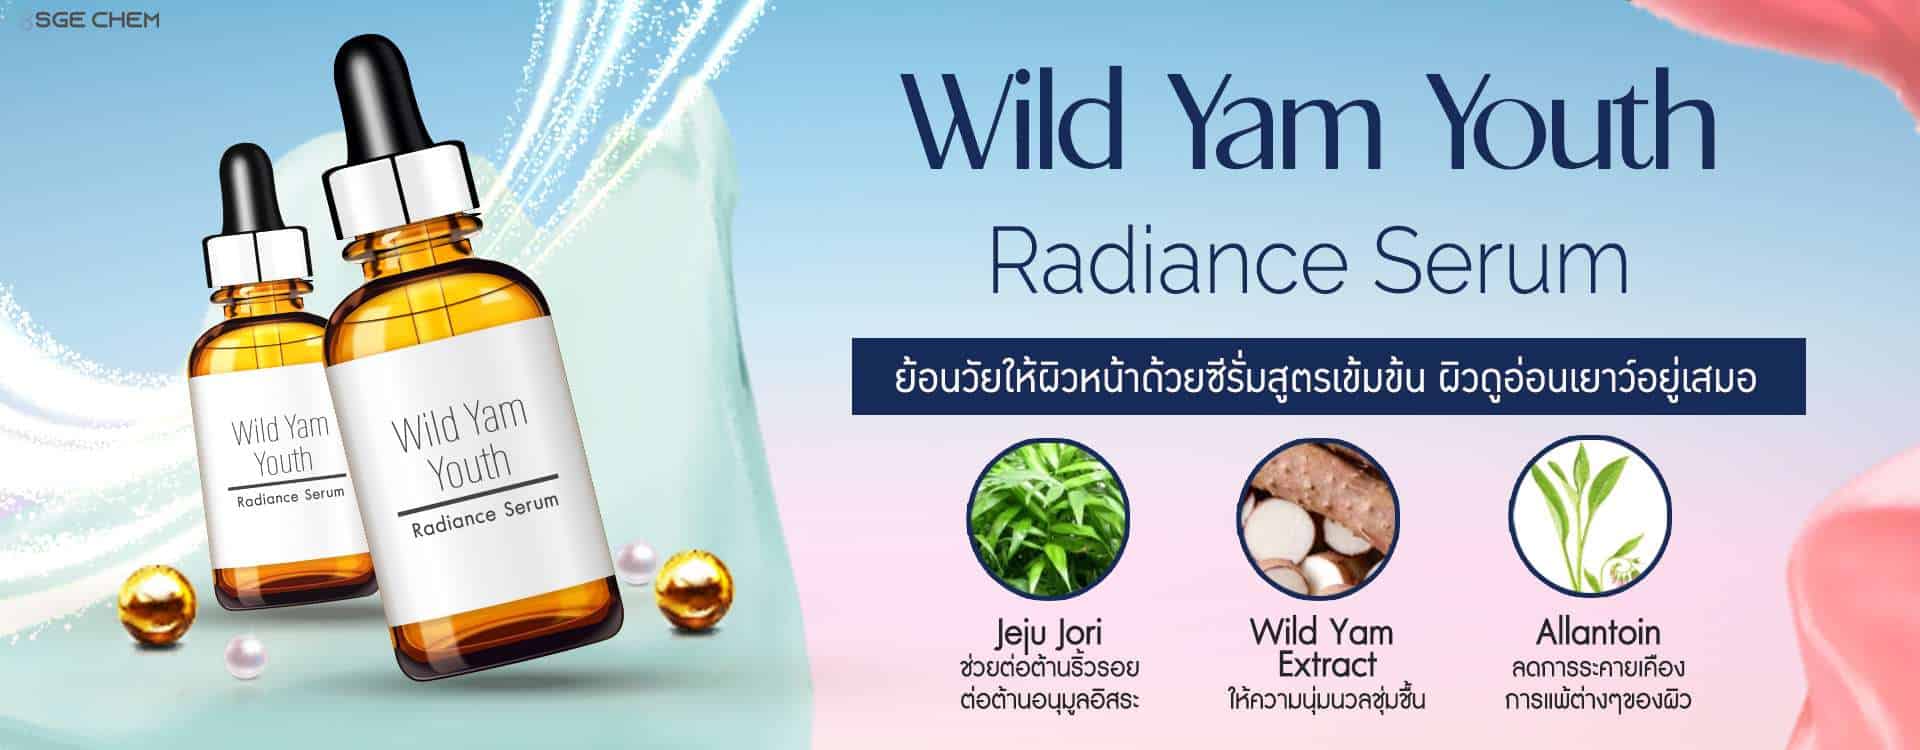 Wild Yam Youth Radiance Serum